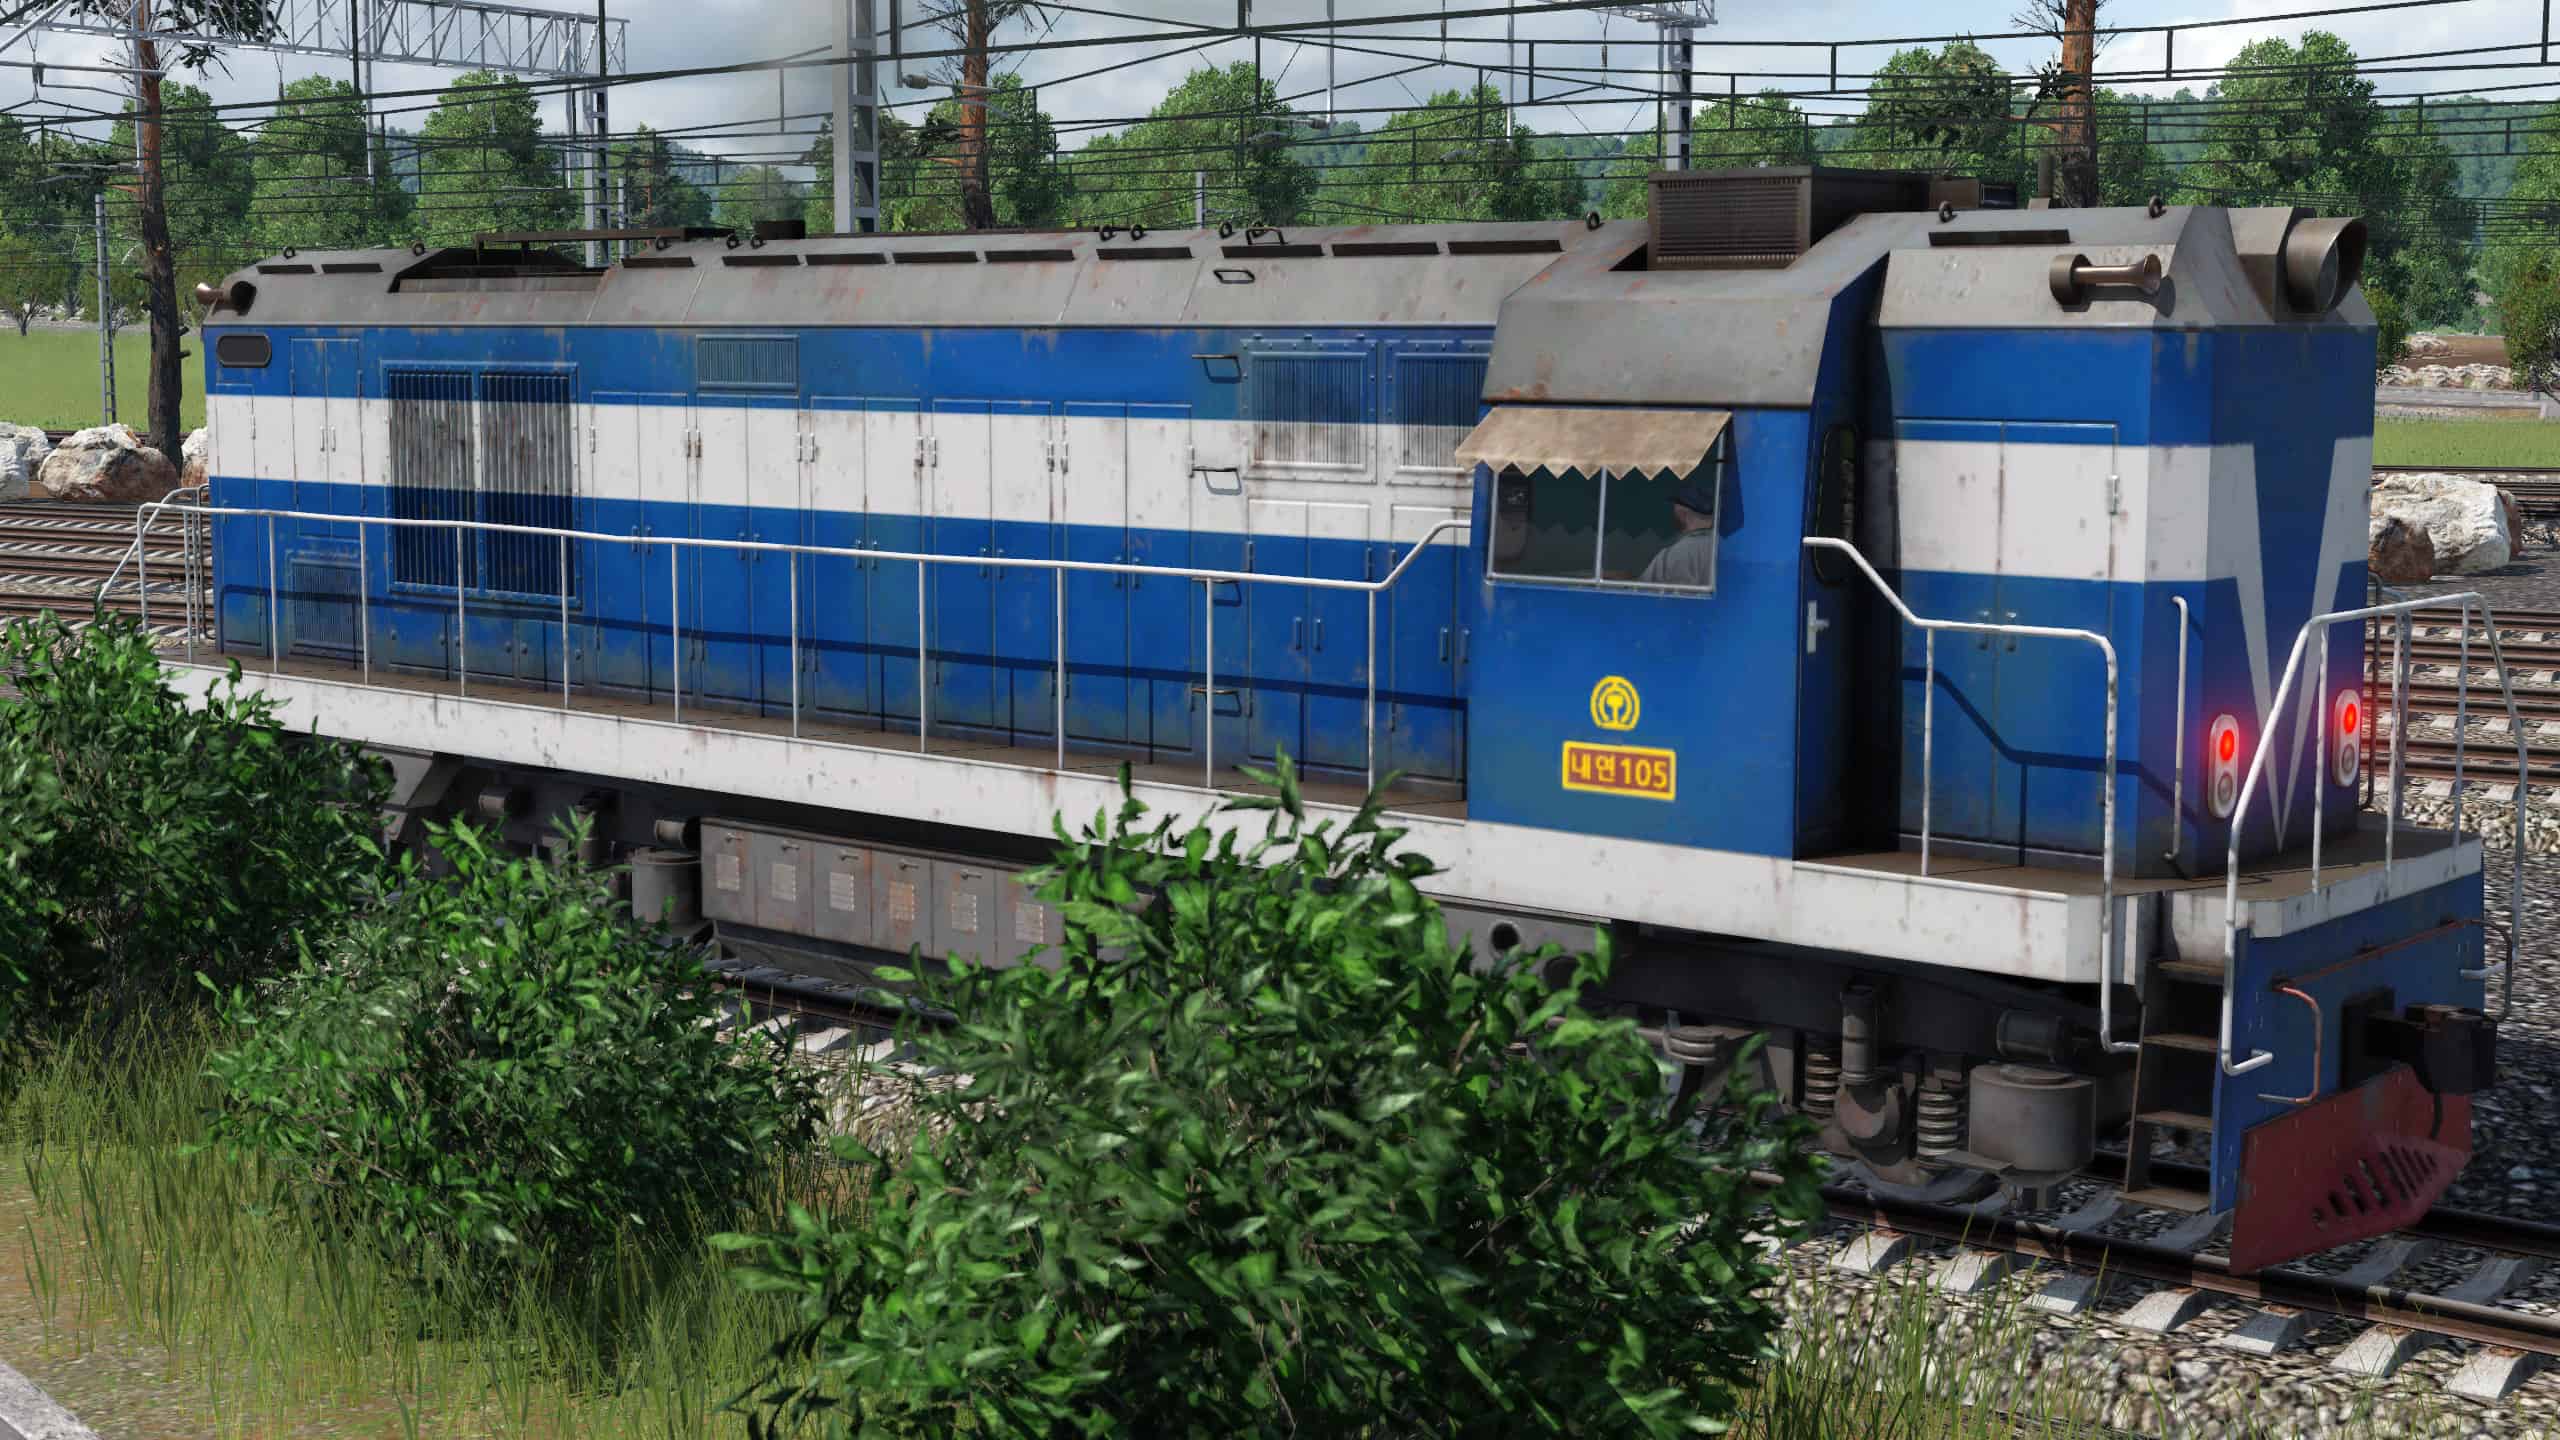 dprk Locomotives Mod | Transport Fever 2 Mod Download